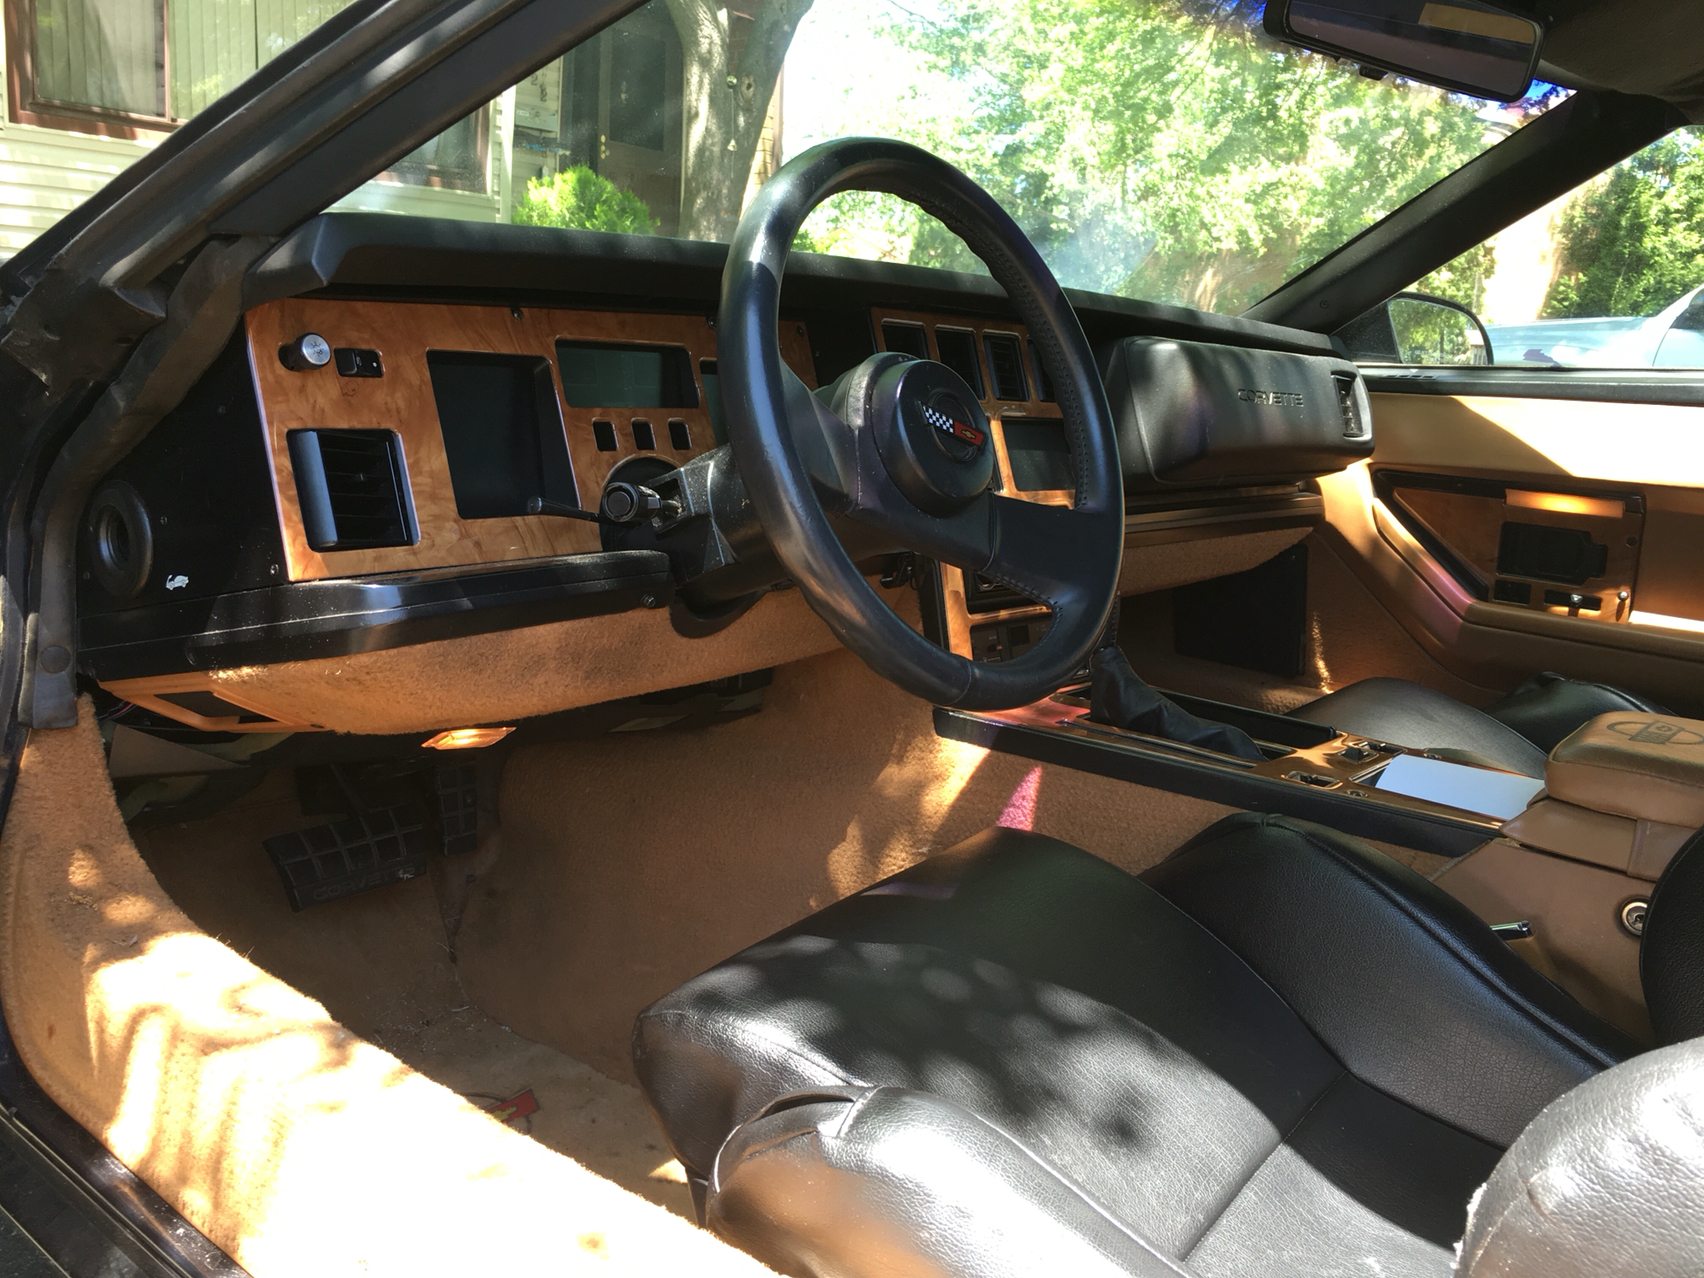 1988 Corvette Interior